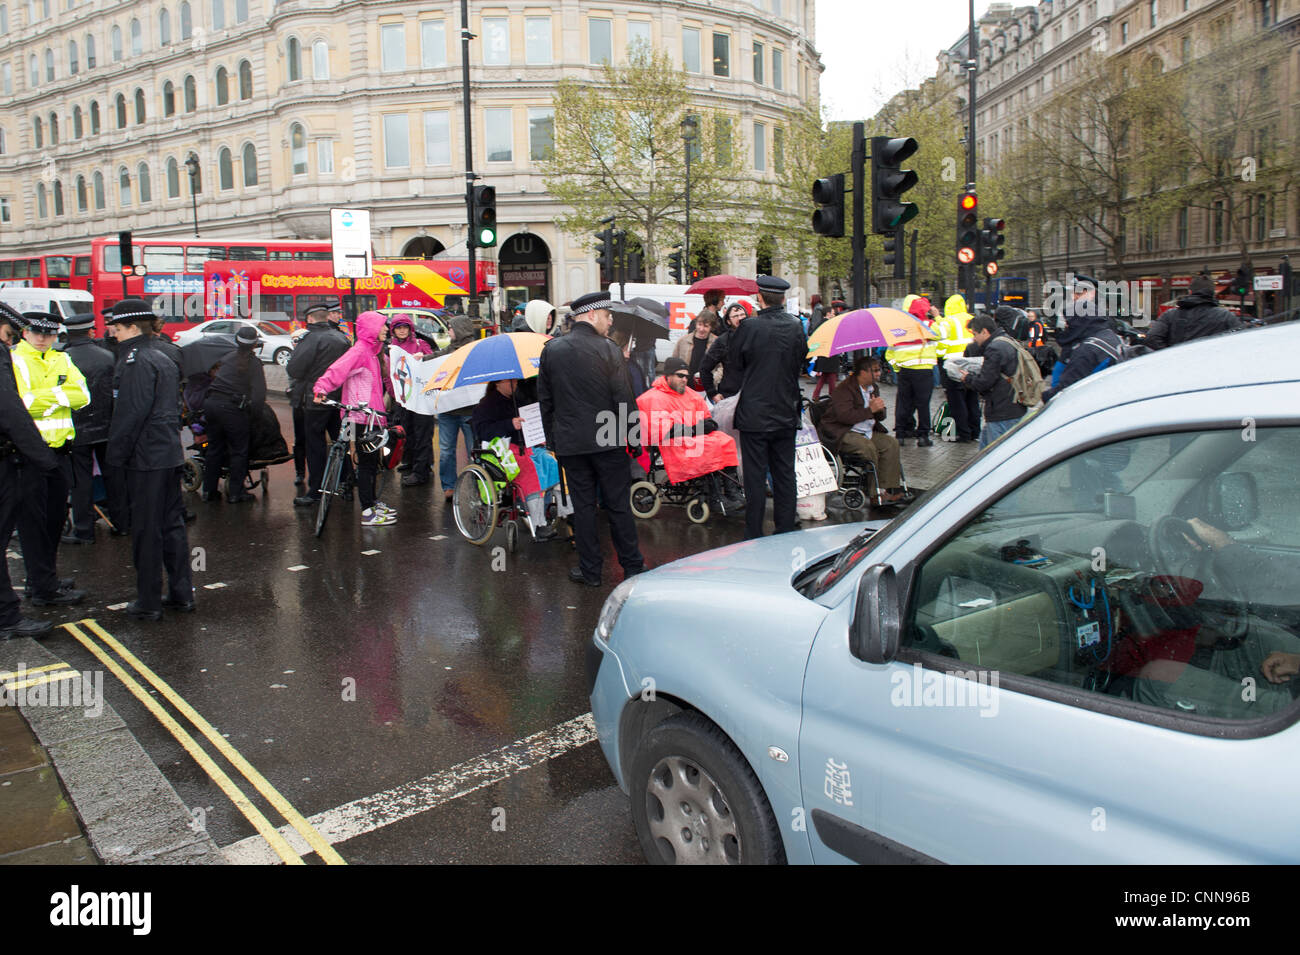 Disattivato i manifestanti bloccano la strada da Trafalgar Square, nel centro di Londra per protestare contro il governo taglia che li riguardano. Foto Stock